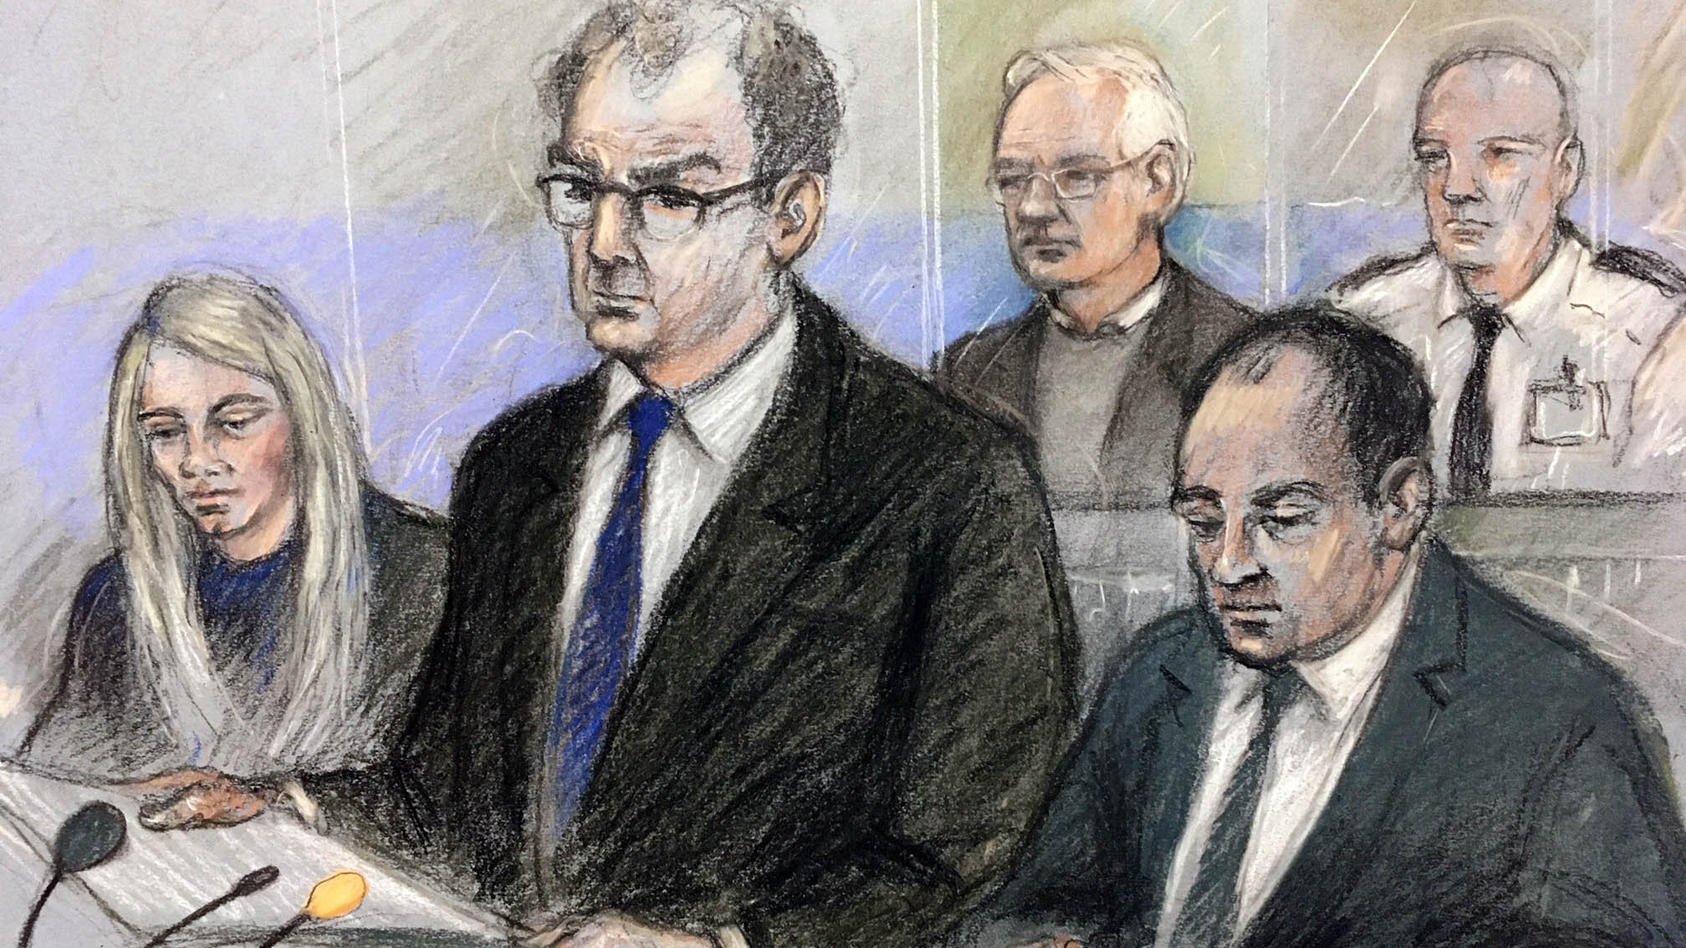 Die Gerichtszeichnung von Elizabeth Cook zeigt Wikileaks-Gründer Julian Assange (hinten,l.) während der Anhörung in London